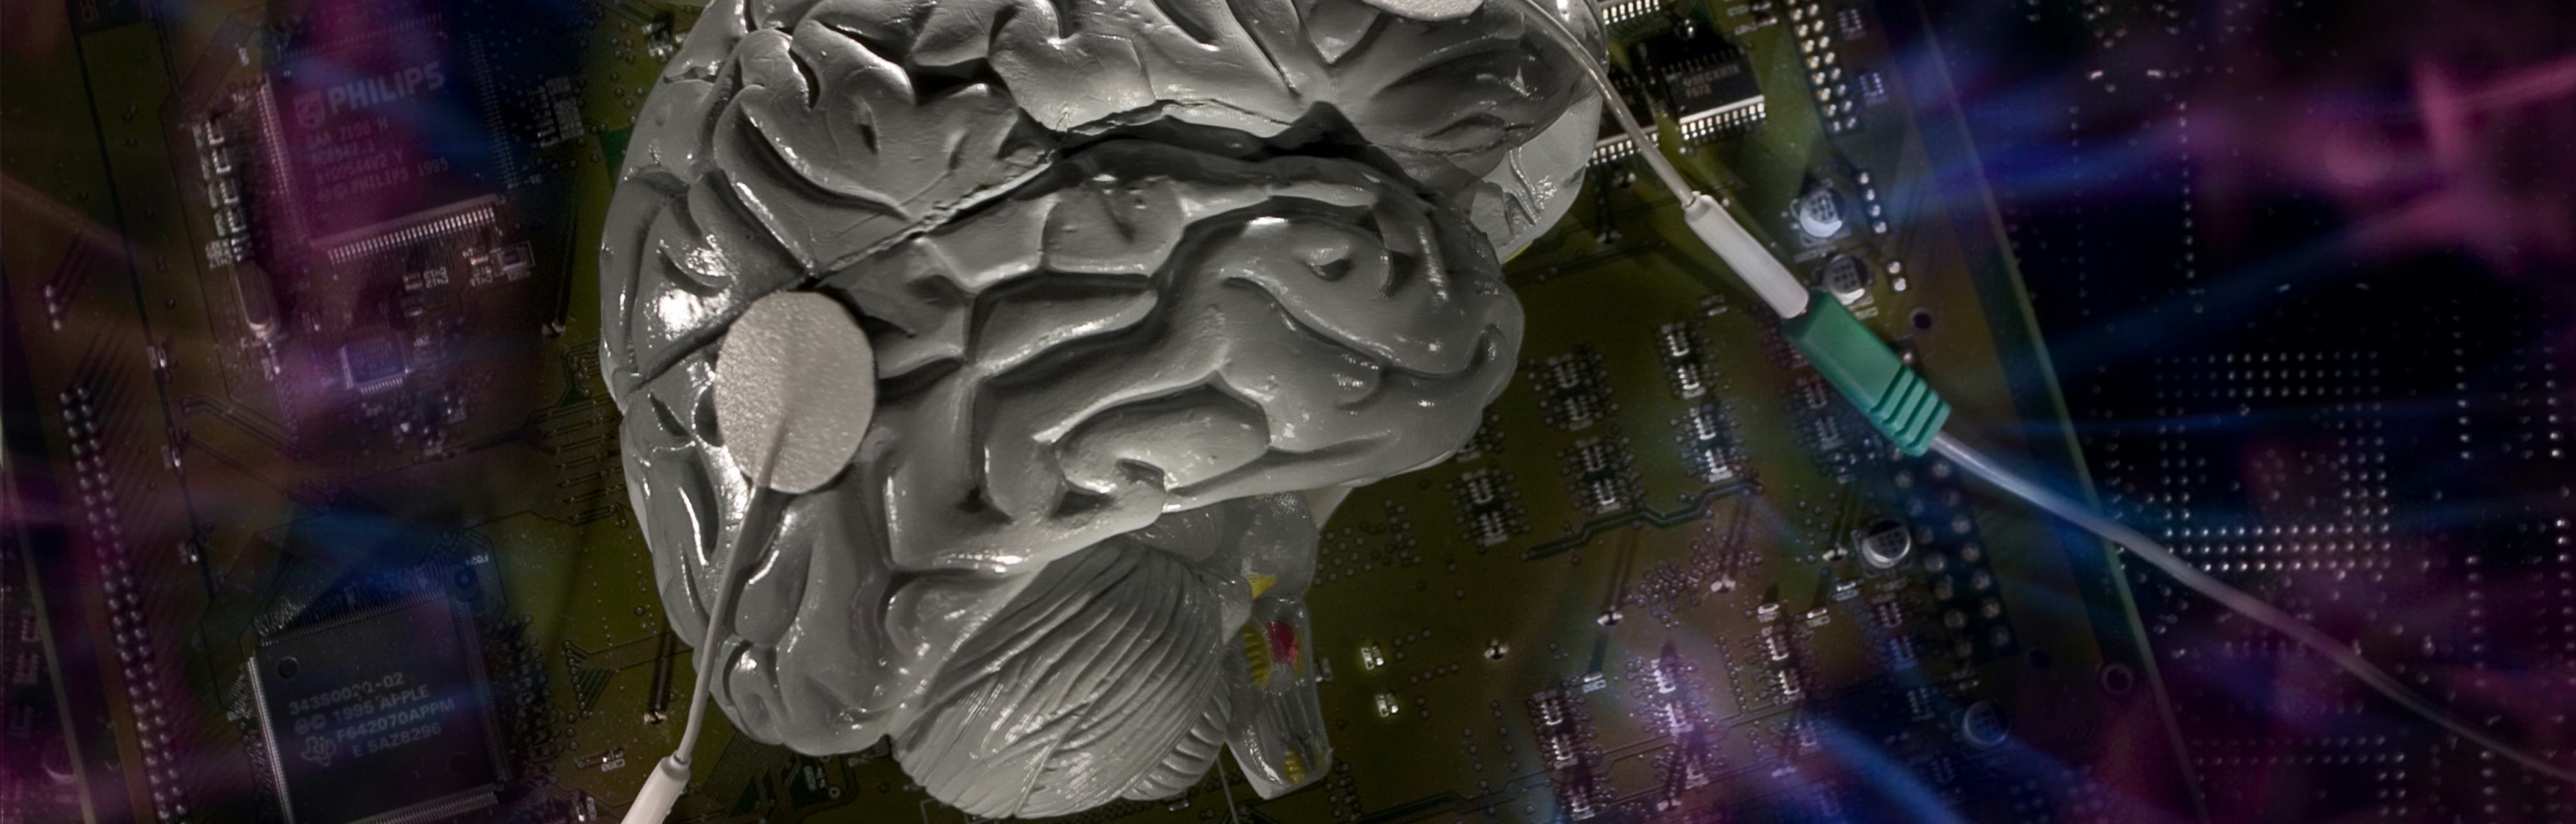 Левое полушарие мозга компьютерная память. Your Brain on Video games. Компьютерный мозг игра